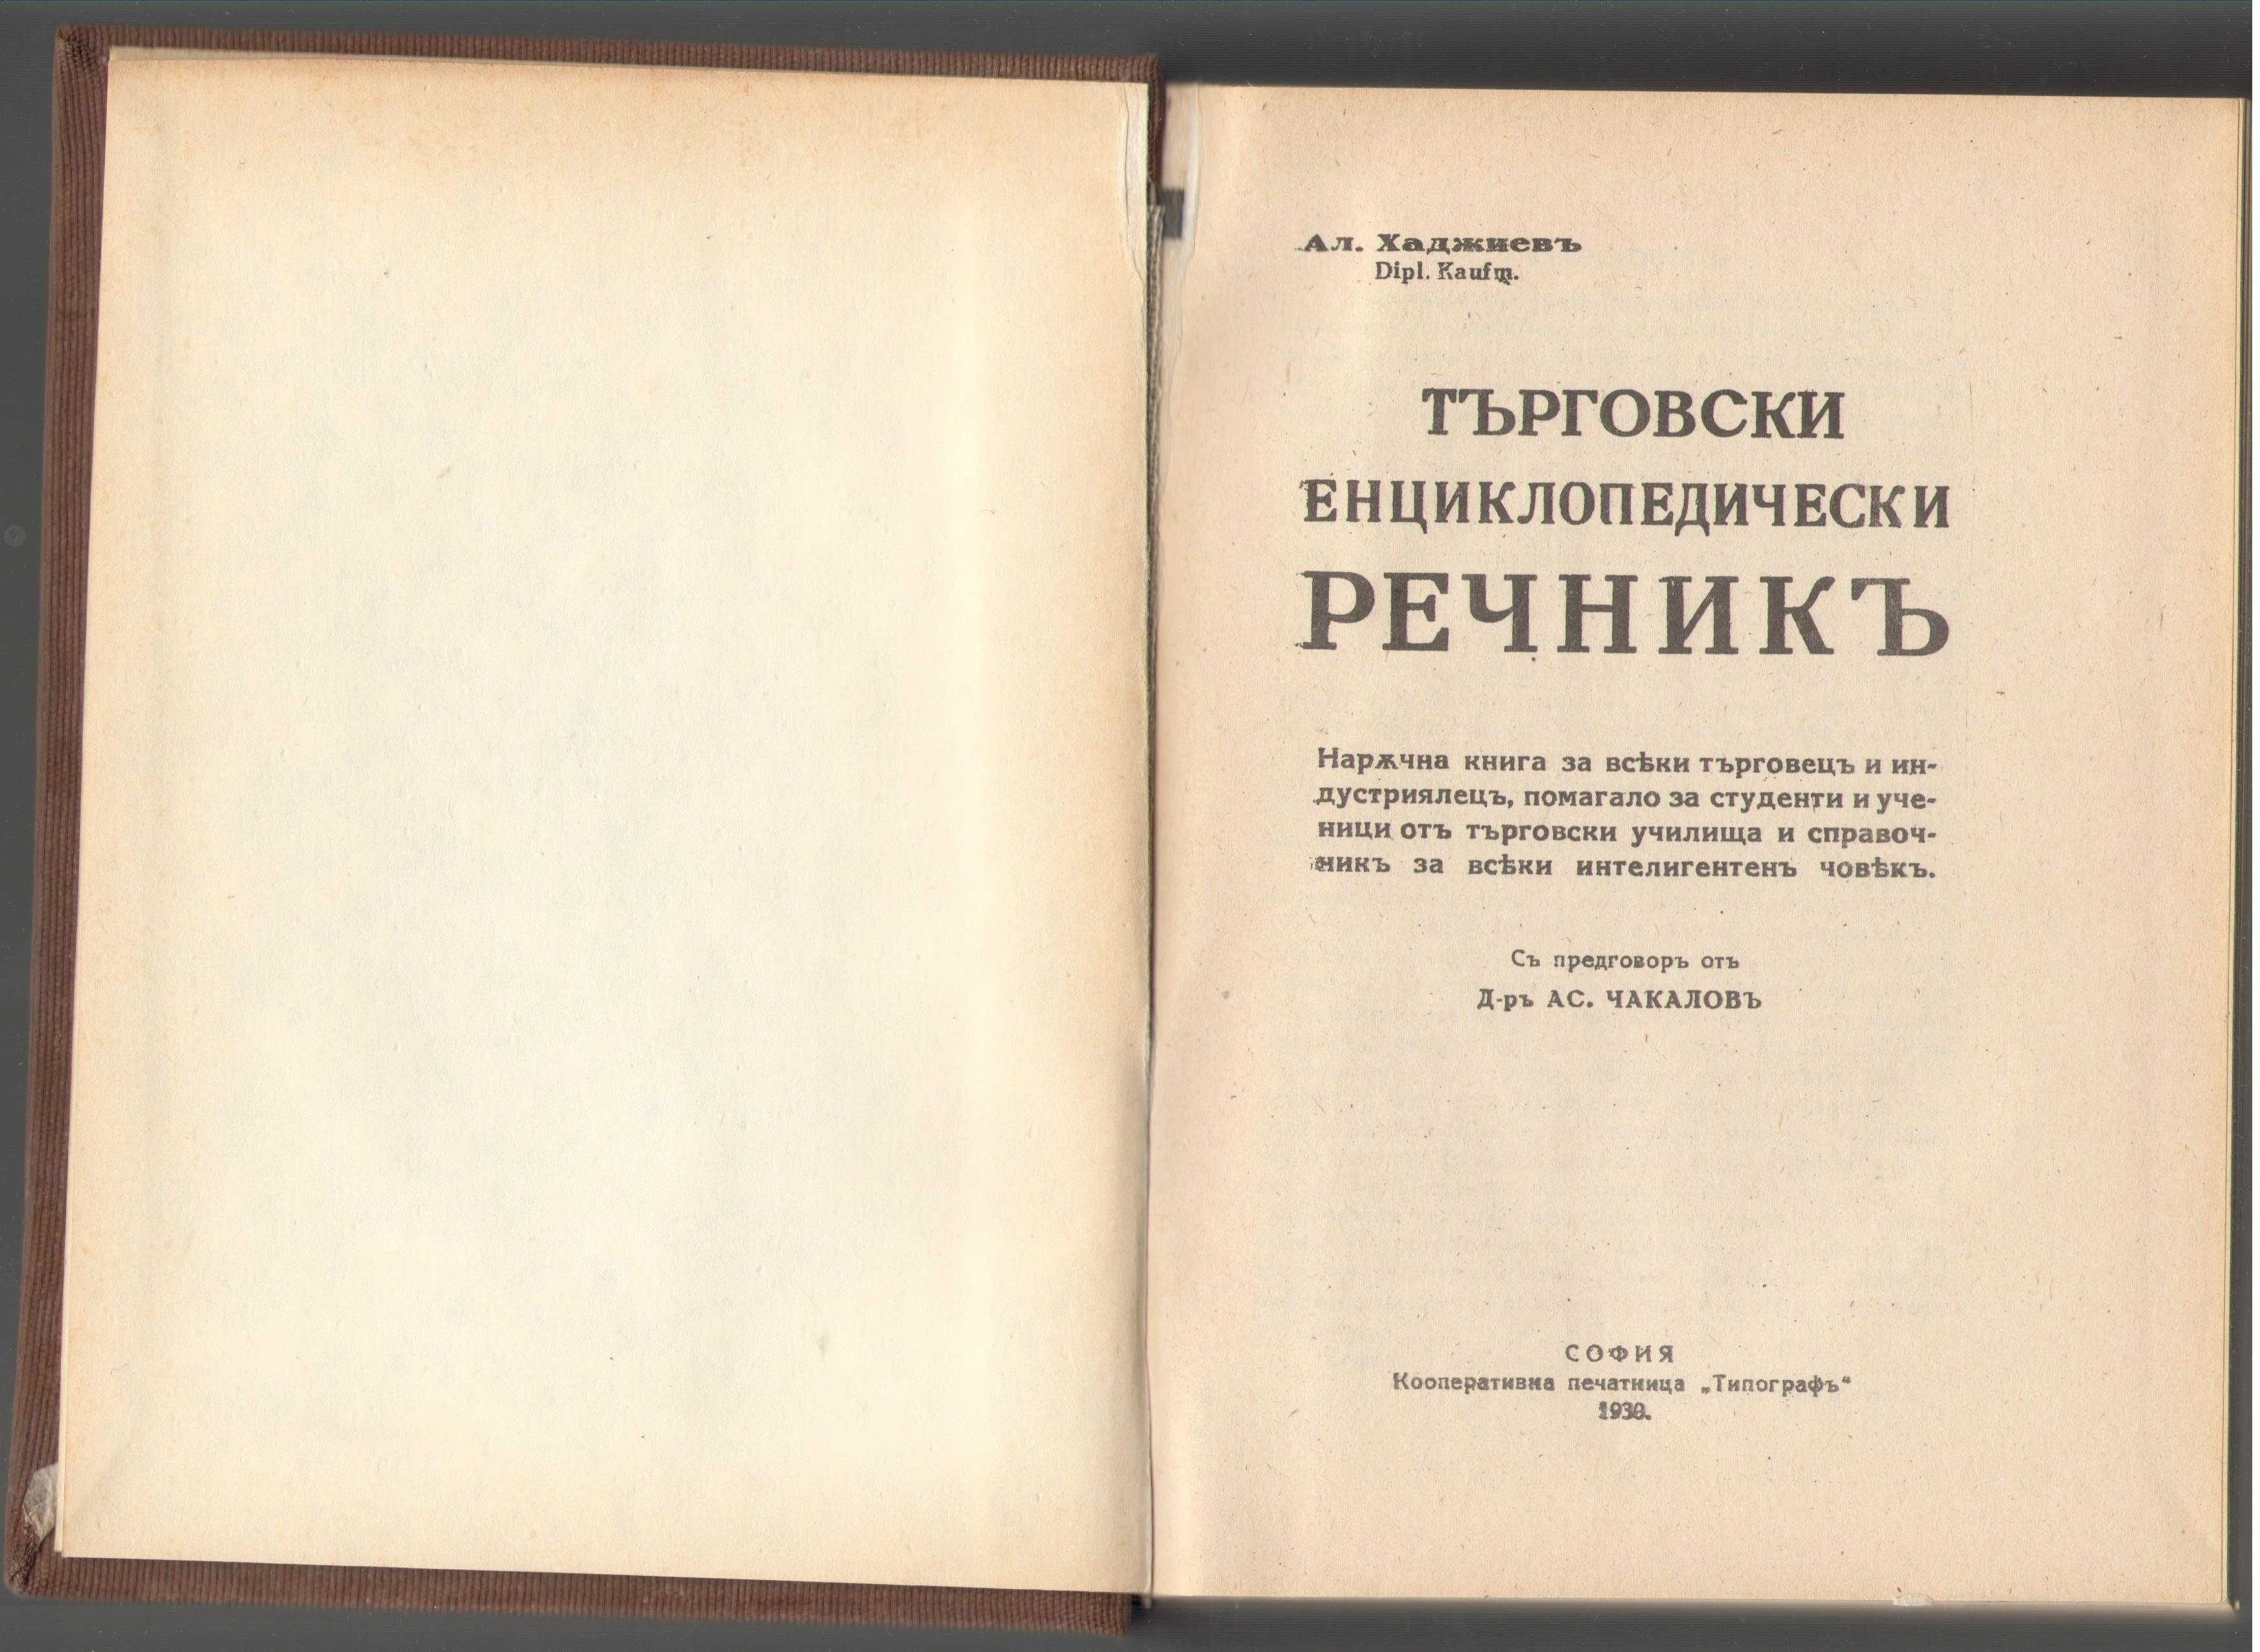 Търговски енциклопедичен речник. Фототипно издание. Хаджиев.